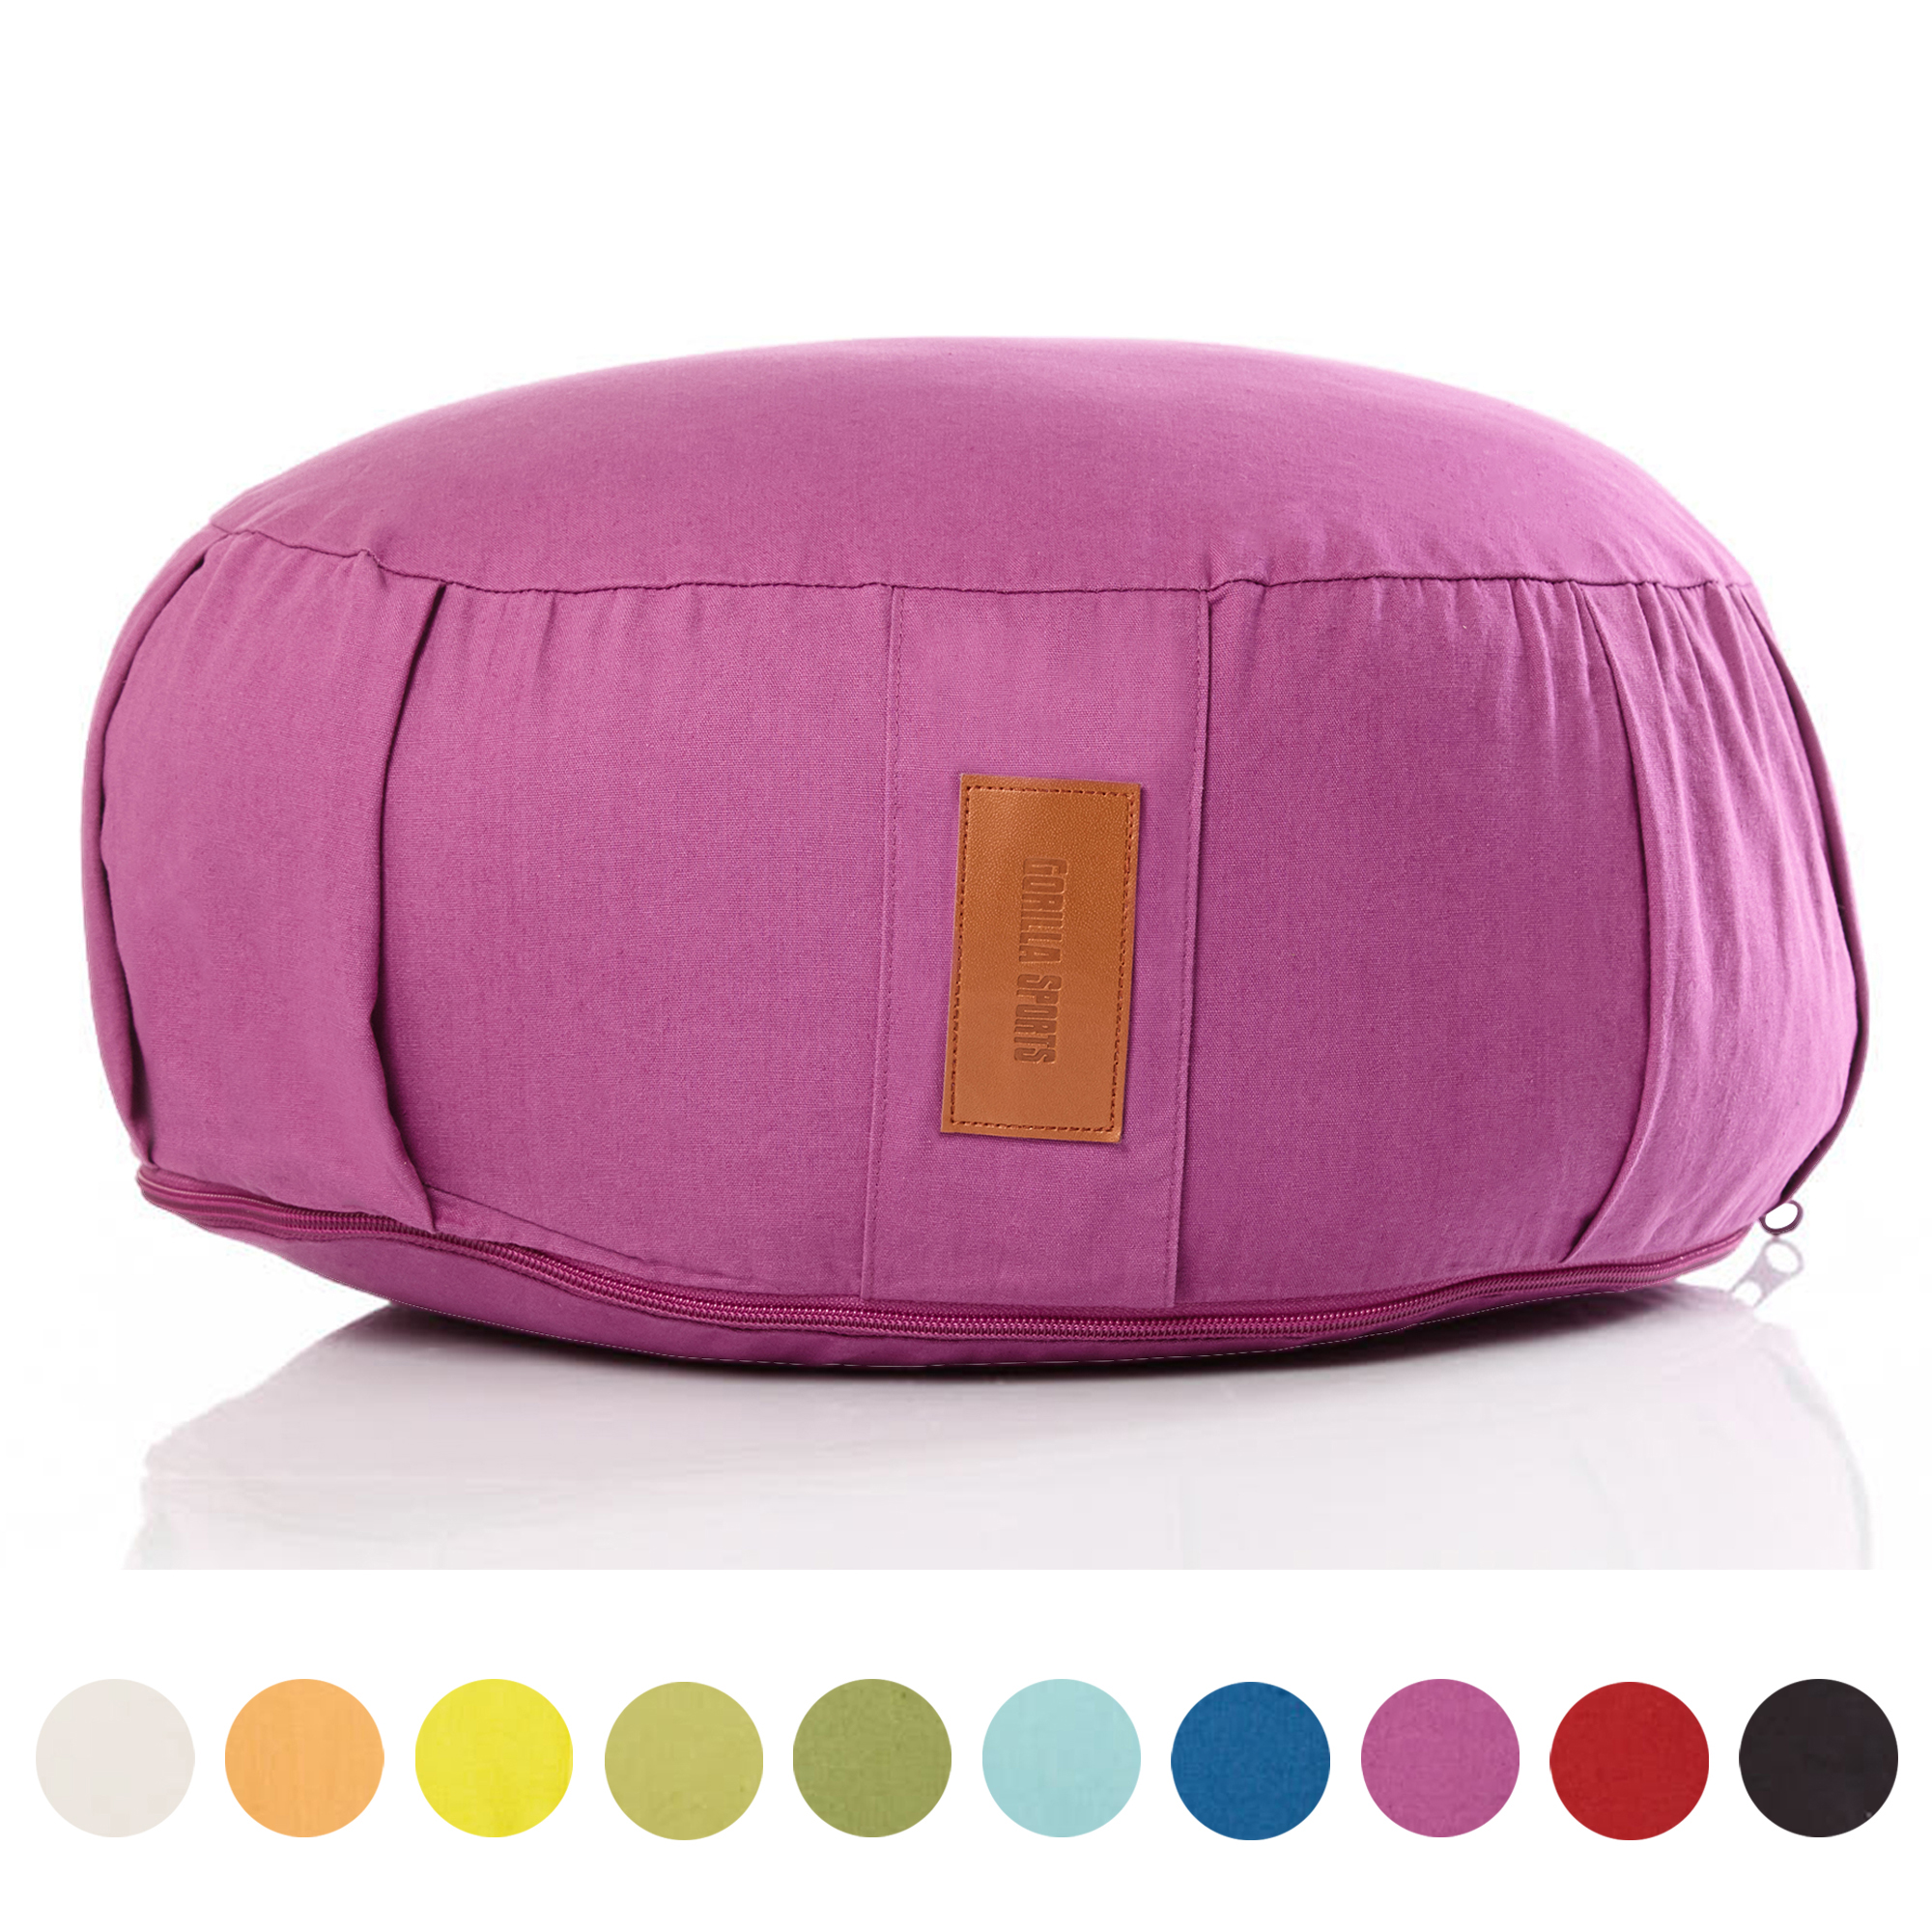 GORILLA SPORTSÂ® coussin de mÃ©ditation violet - Hauteur d'assise 18 cm - coussin de yoga avec rembourrage en balles d'Ã©peautre - Housse en coton lavable